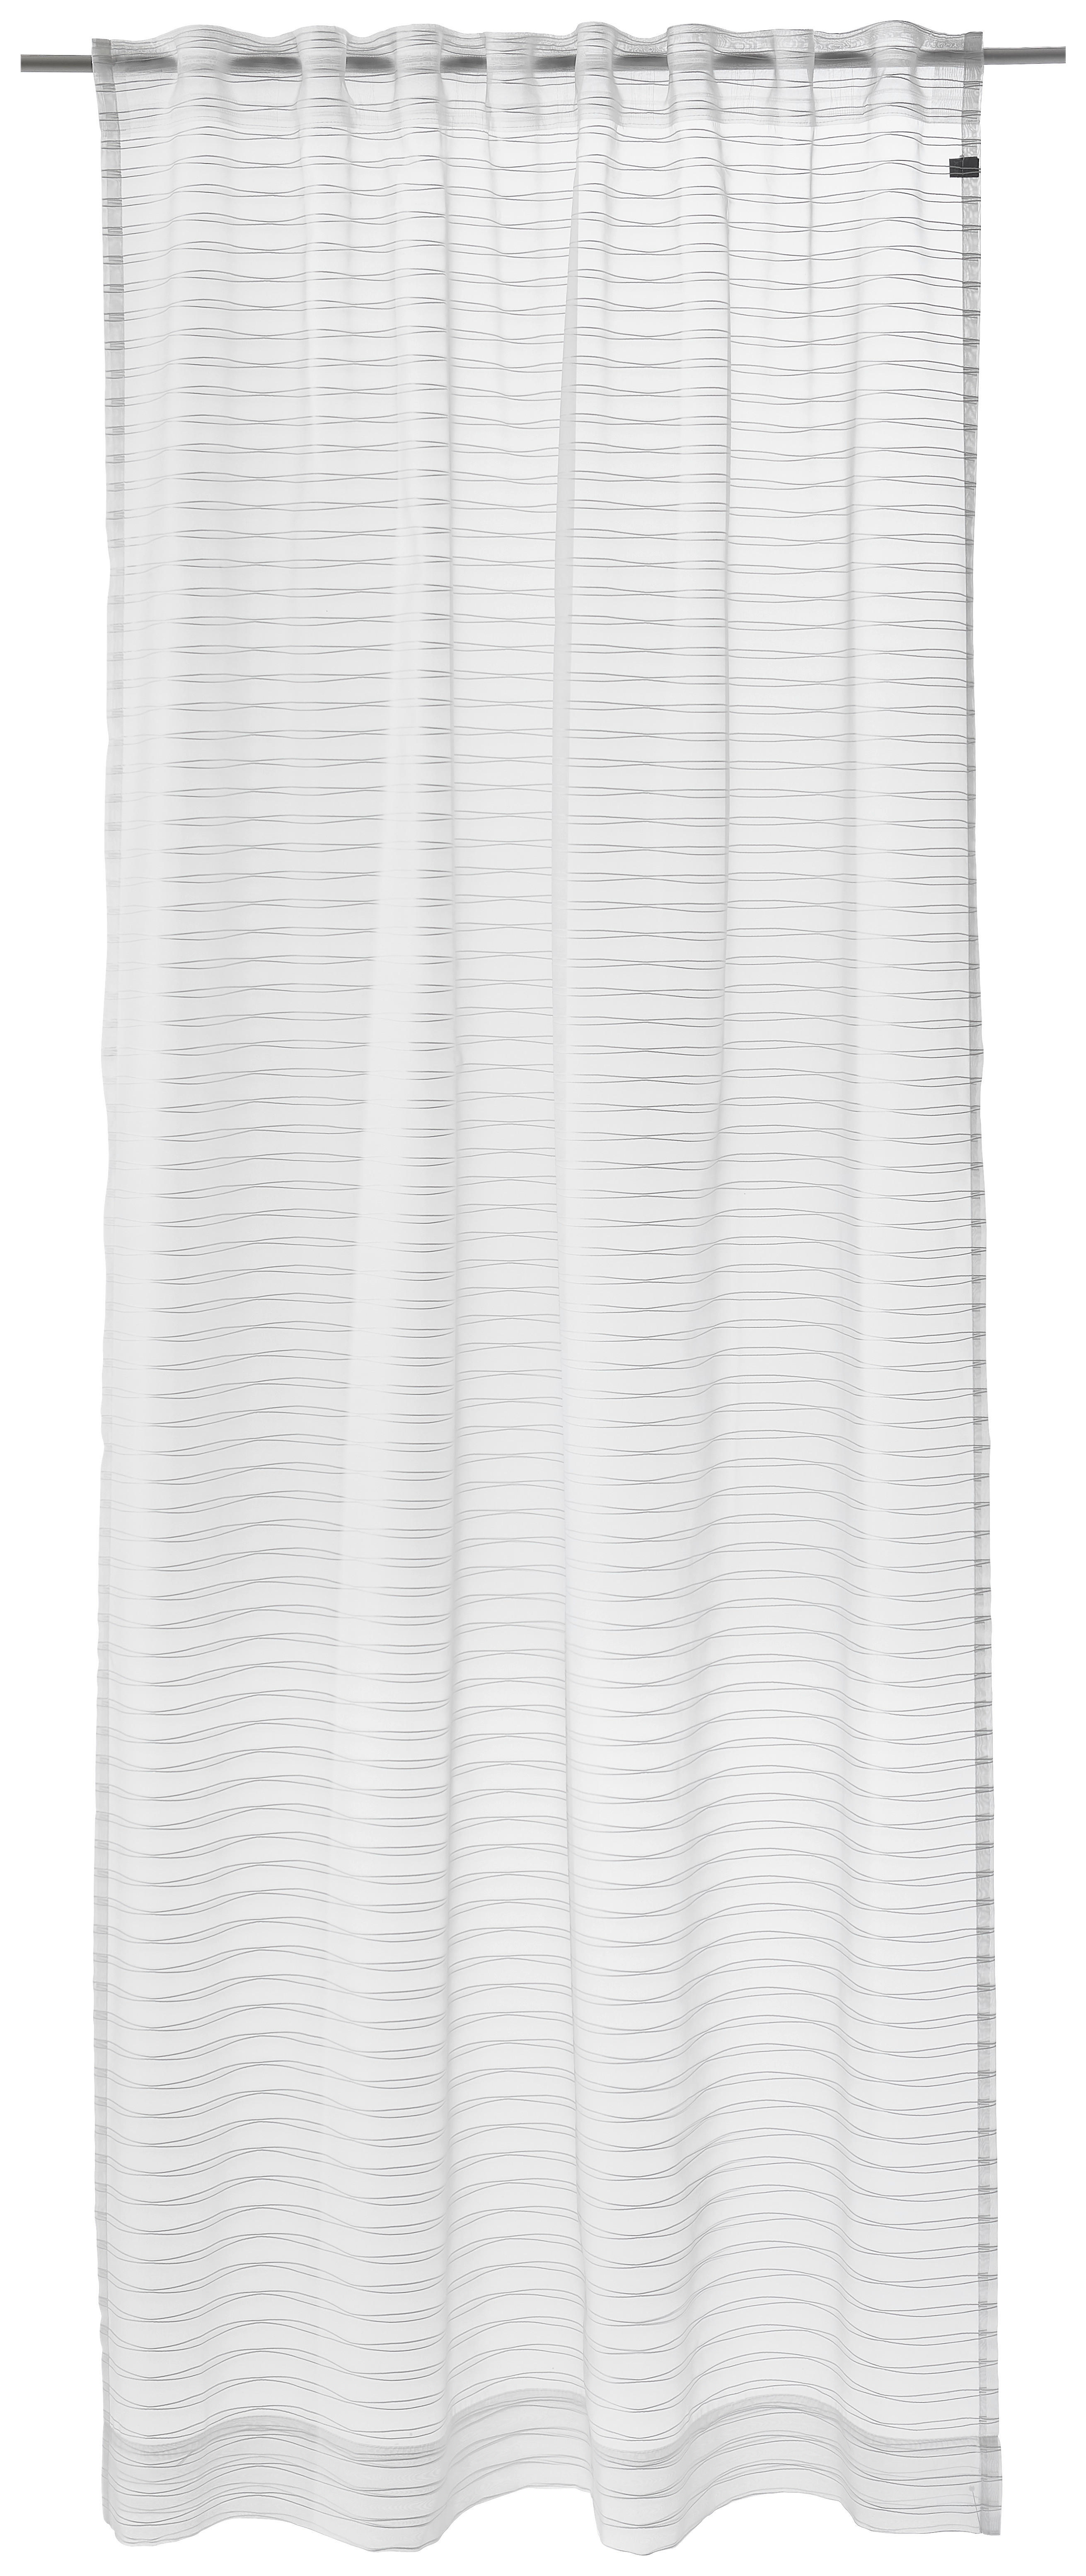 VORHANGSCHAL Waterline transparent 130/250 cm   - Silberfarben, Design, Textil (130/250cm) - Joop!